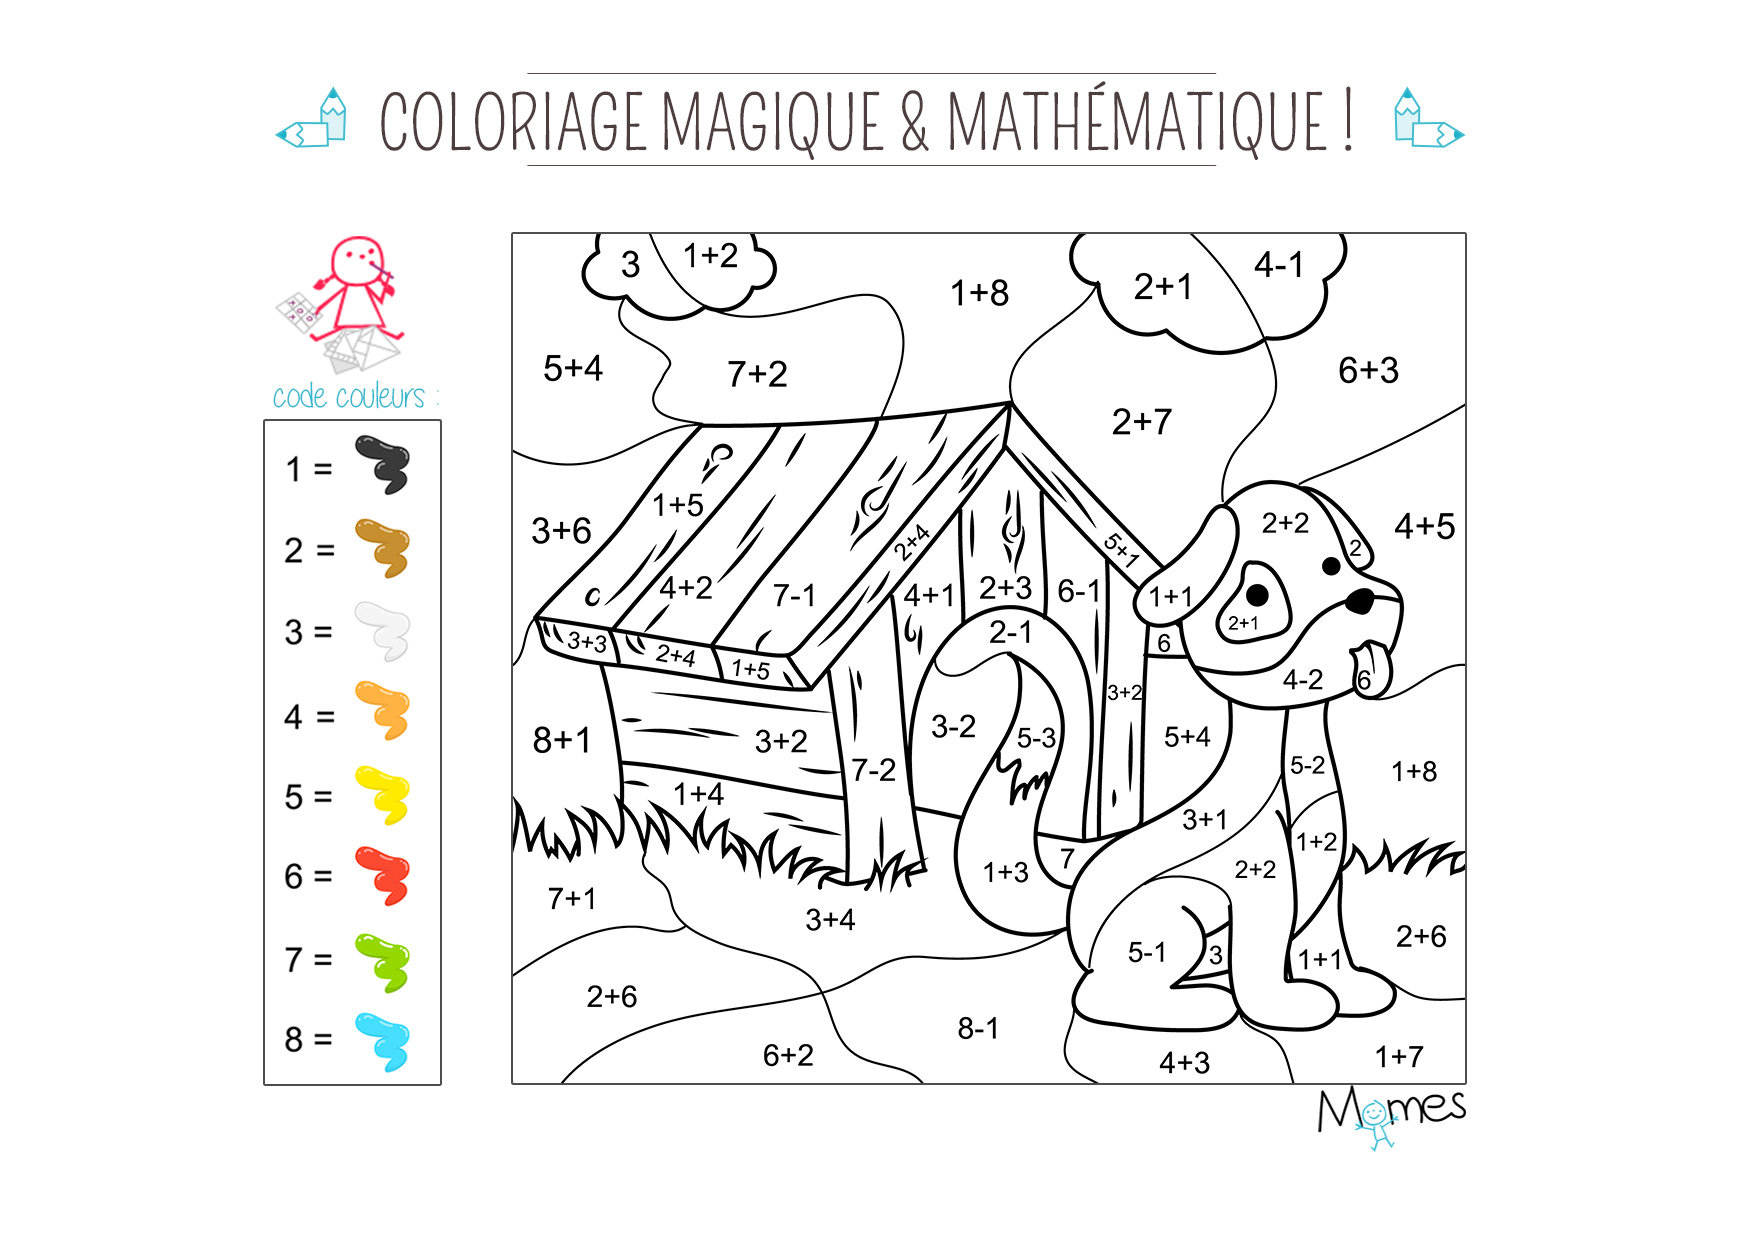 Coloriage magique et mathematique le chien